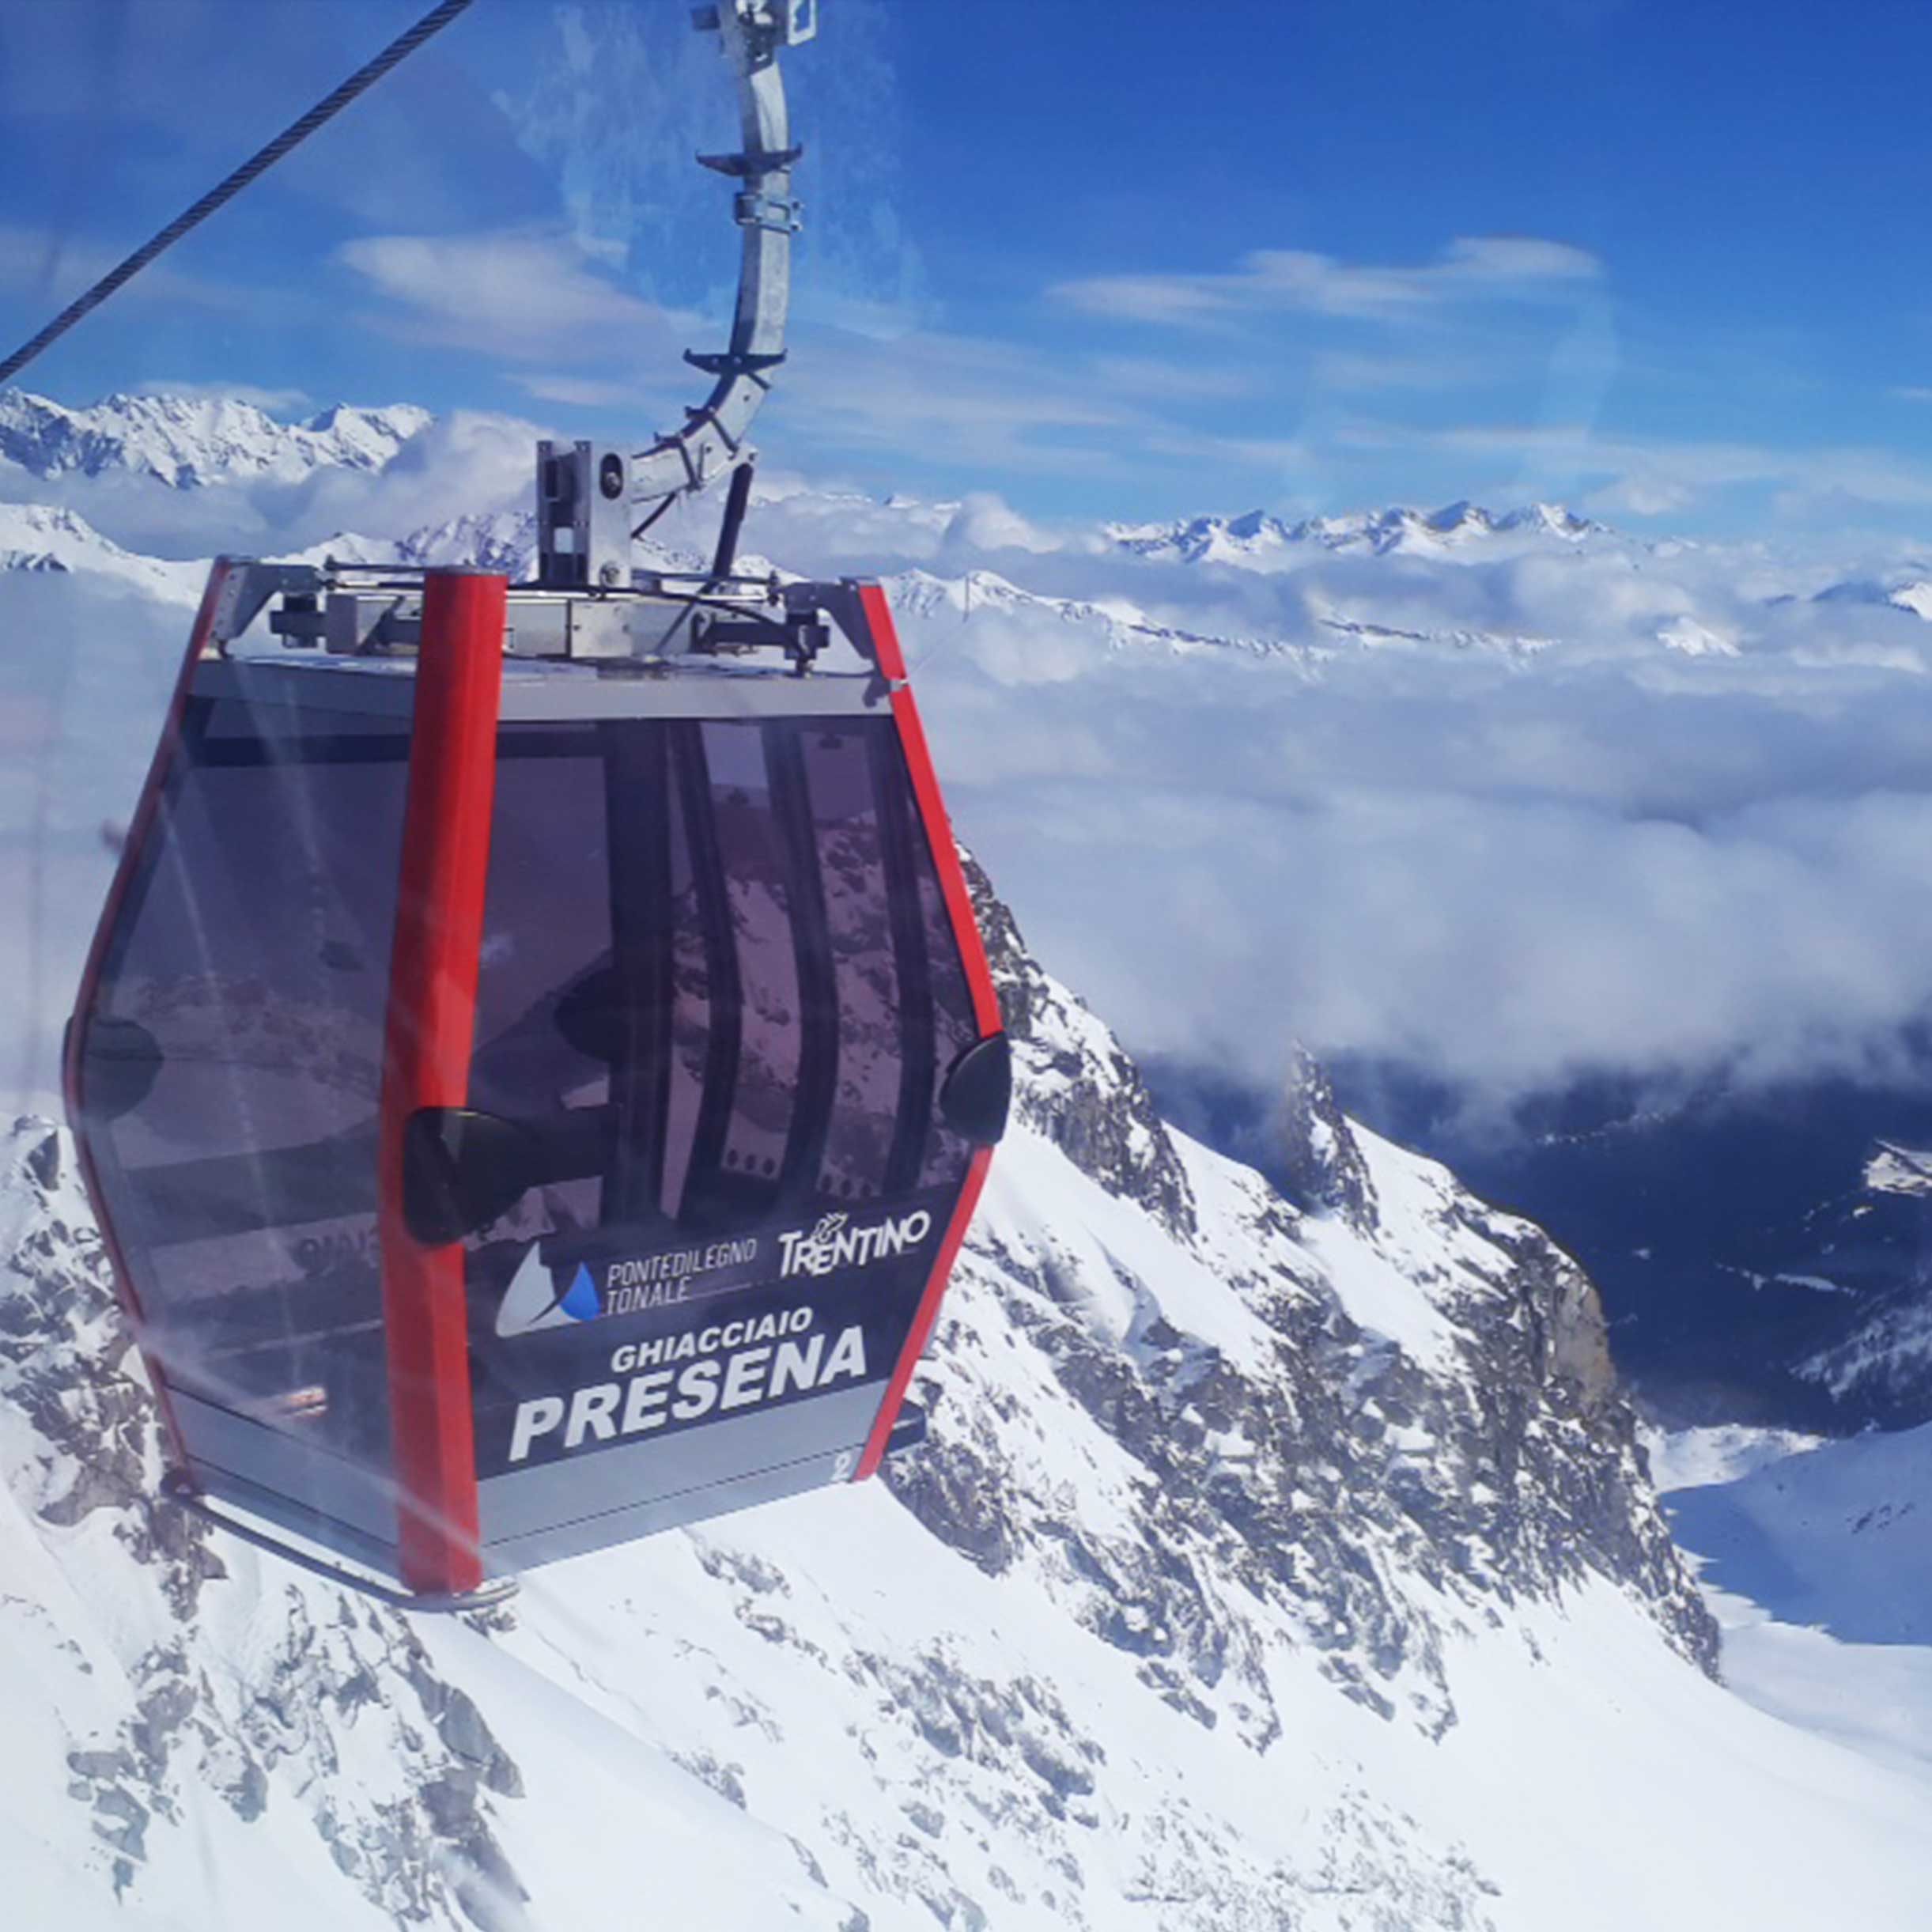 The gondola cable car climbing up to the Presena glacier in Passo Tonale